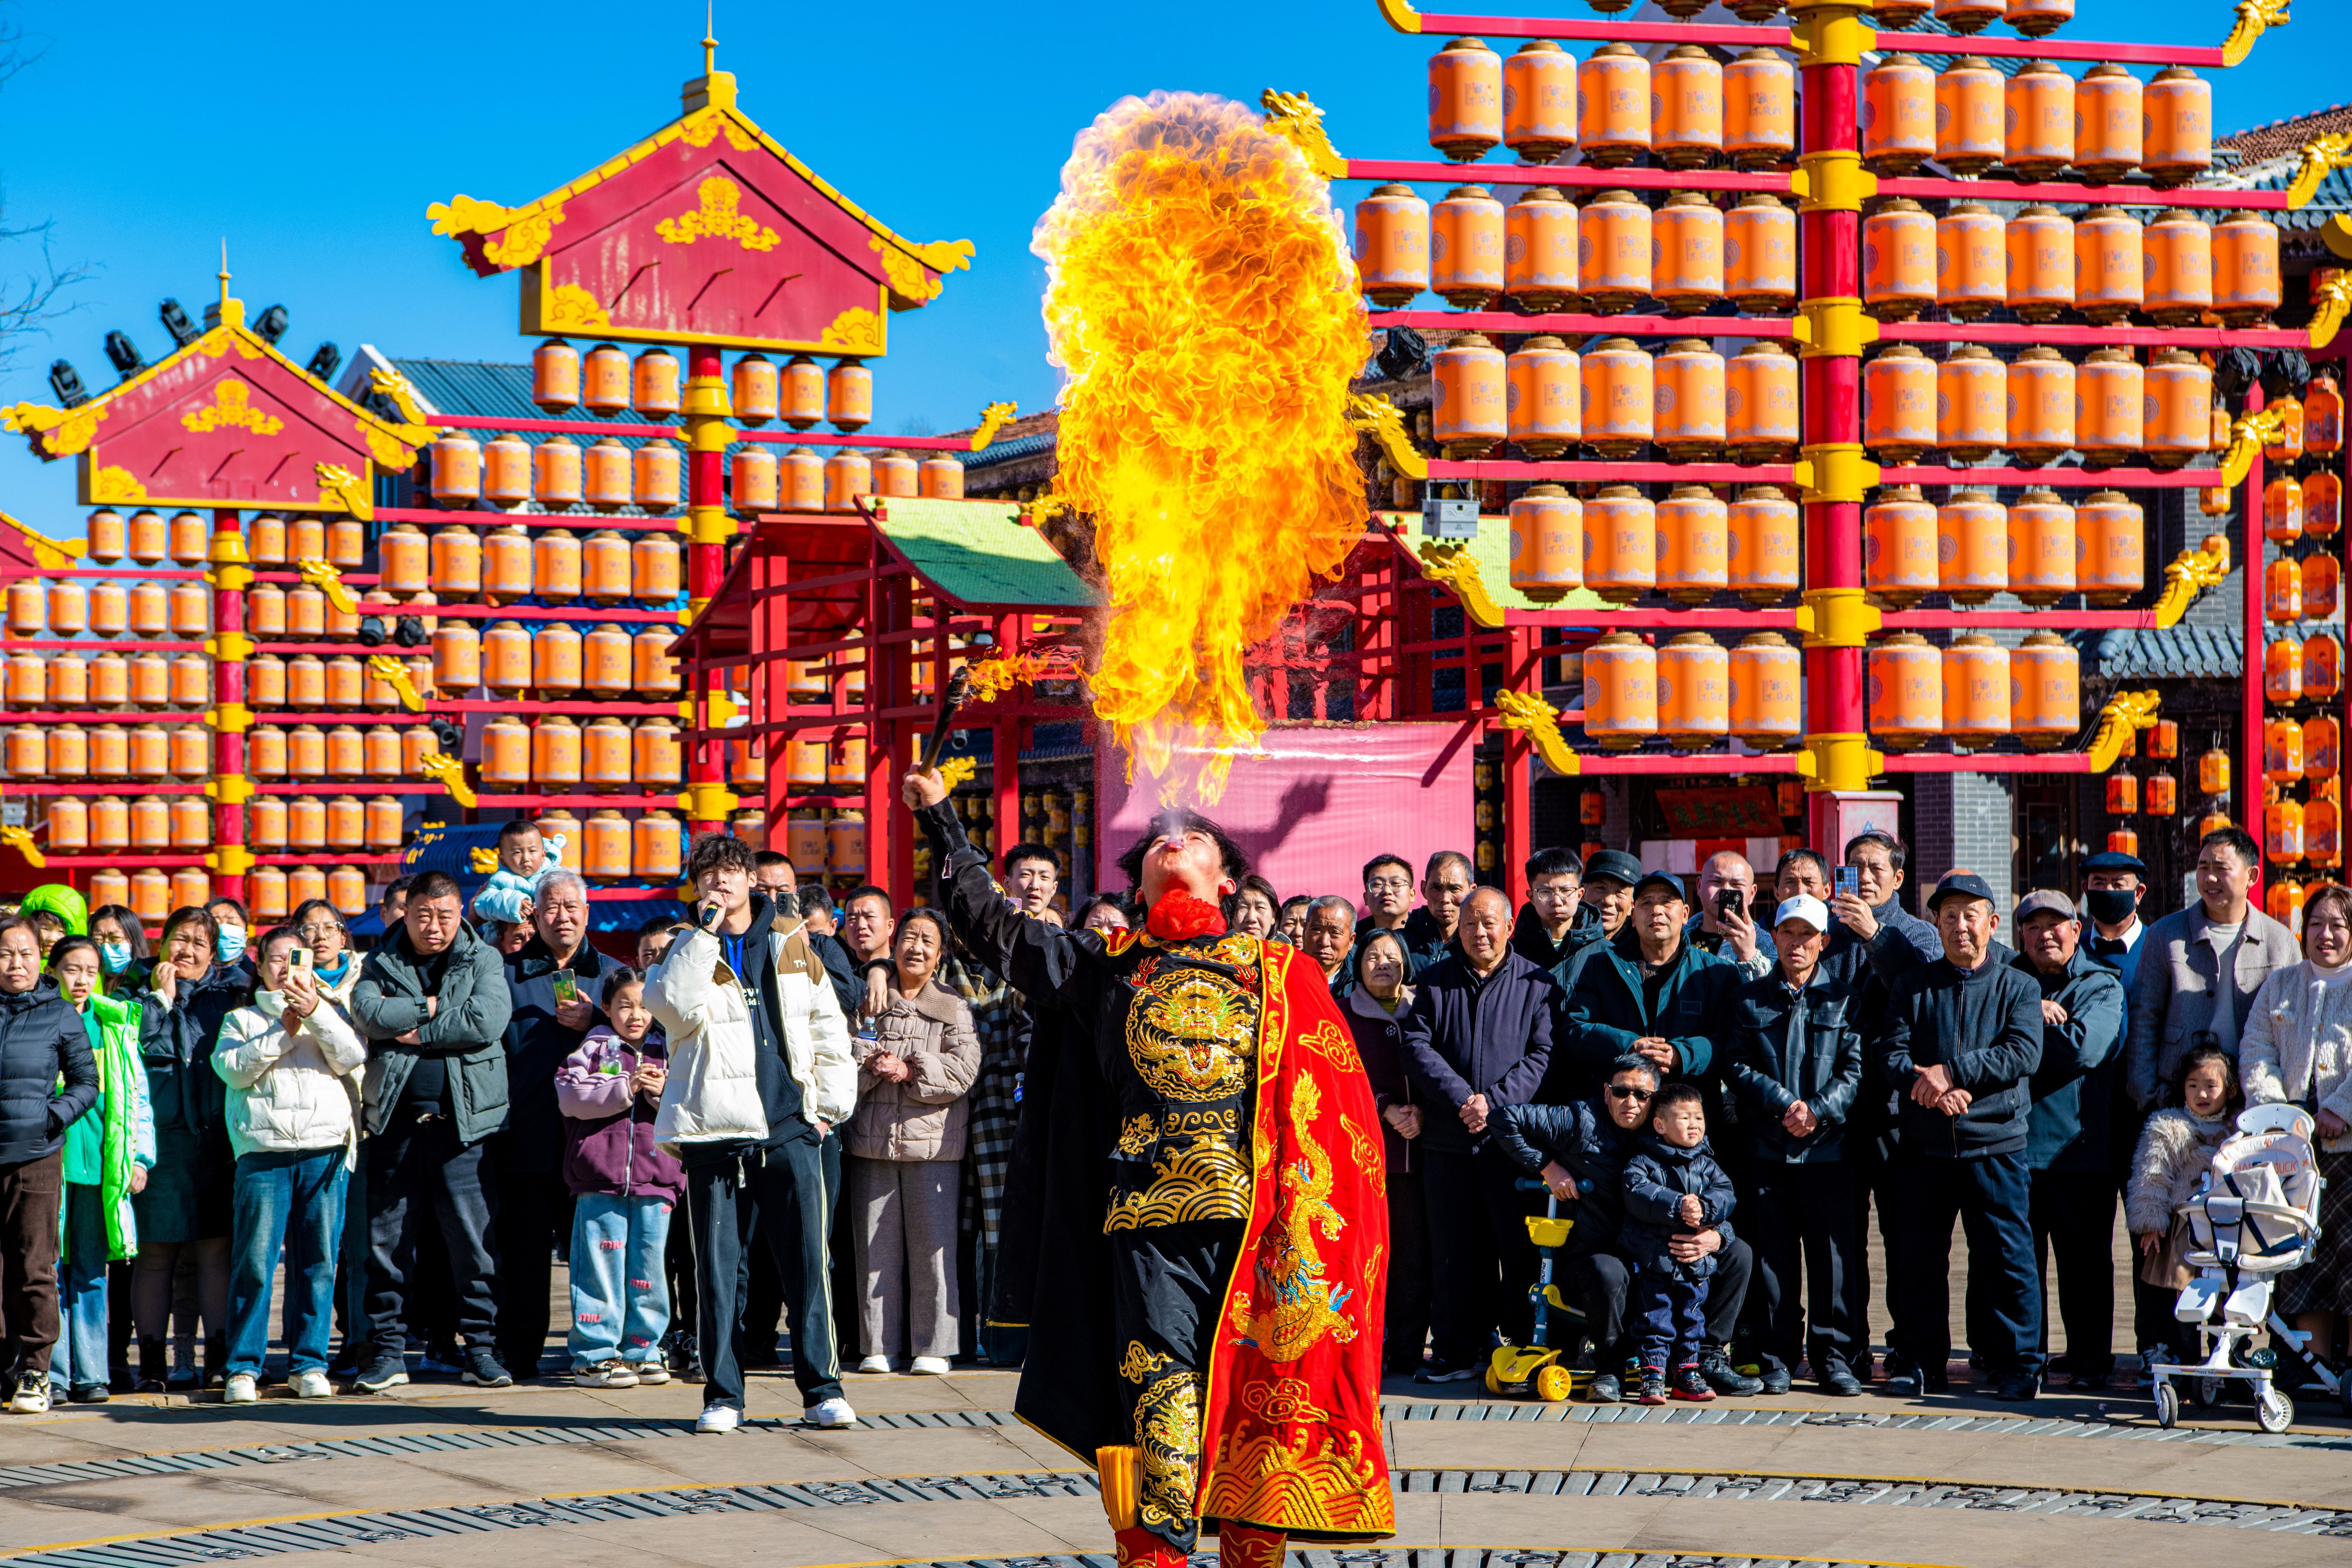 《喷火》喷火是一种中国传统民间技艺，表演者通过将燃料喷入空中，然后点燃，形成壮观的火焰效果。这种表演形式给观众带来视觉上的震撼，展示了民间艺人的勇气和技艺。